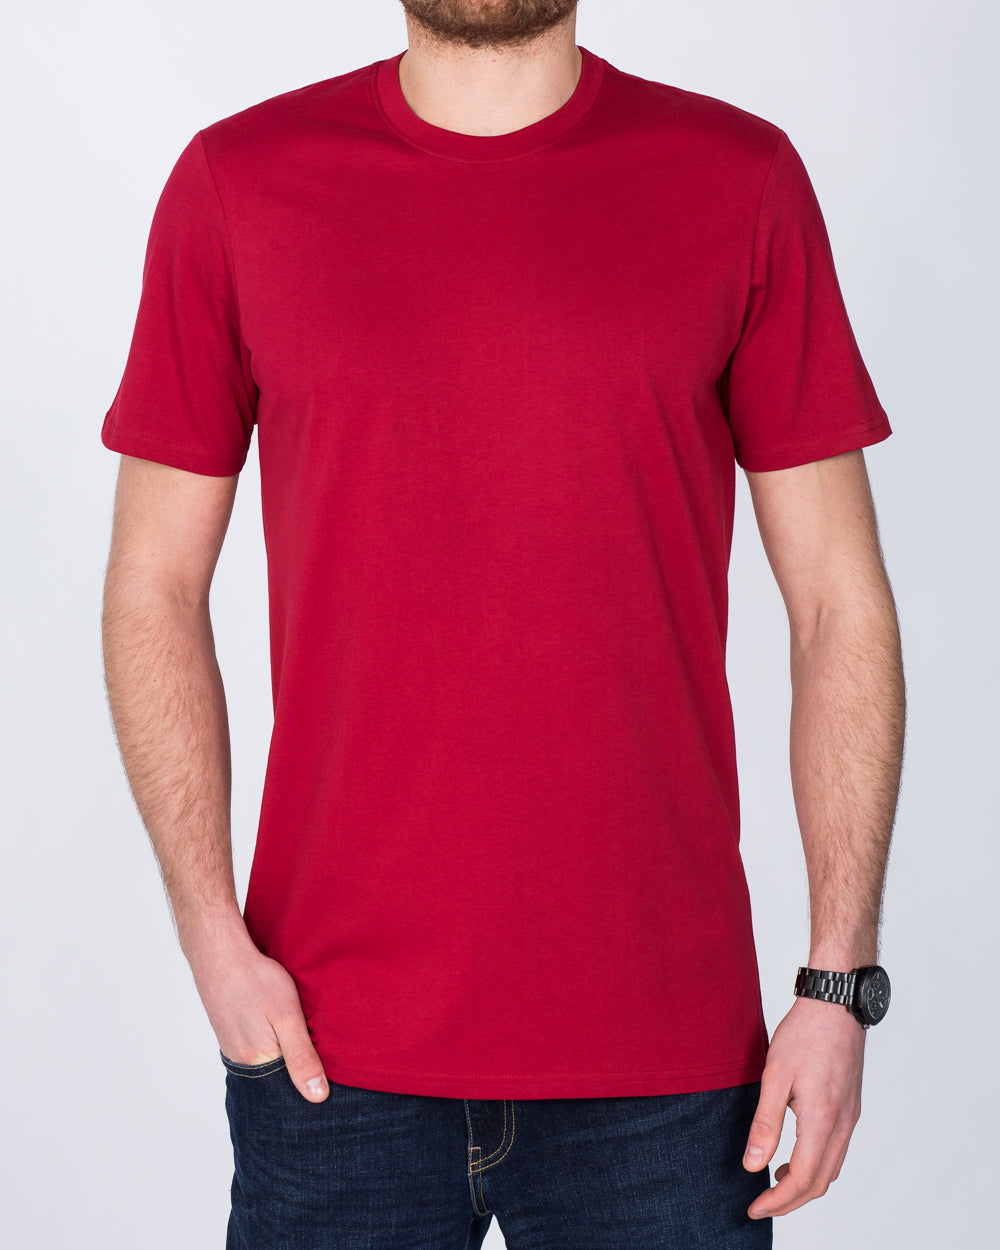 Girav Sydney Extra Tall T-Shirt (red)